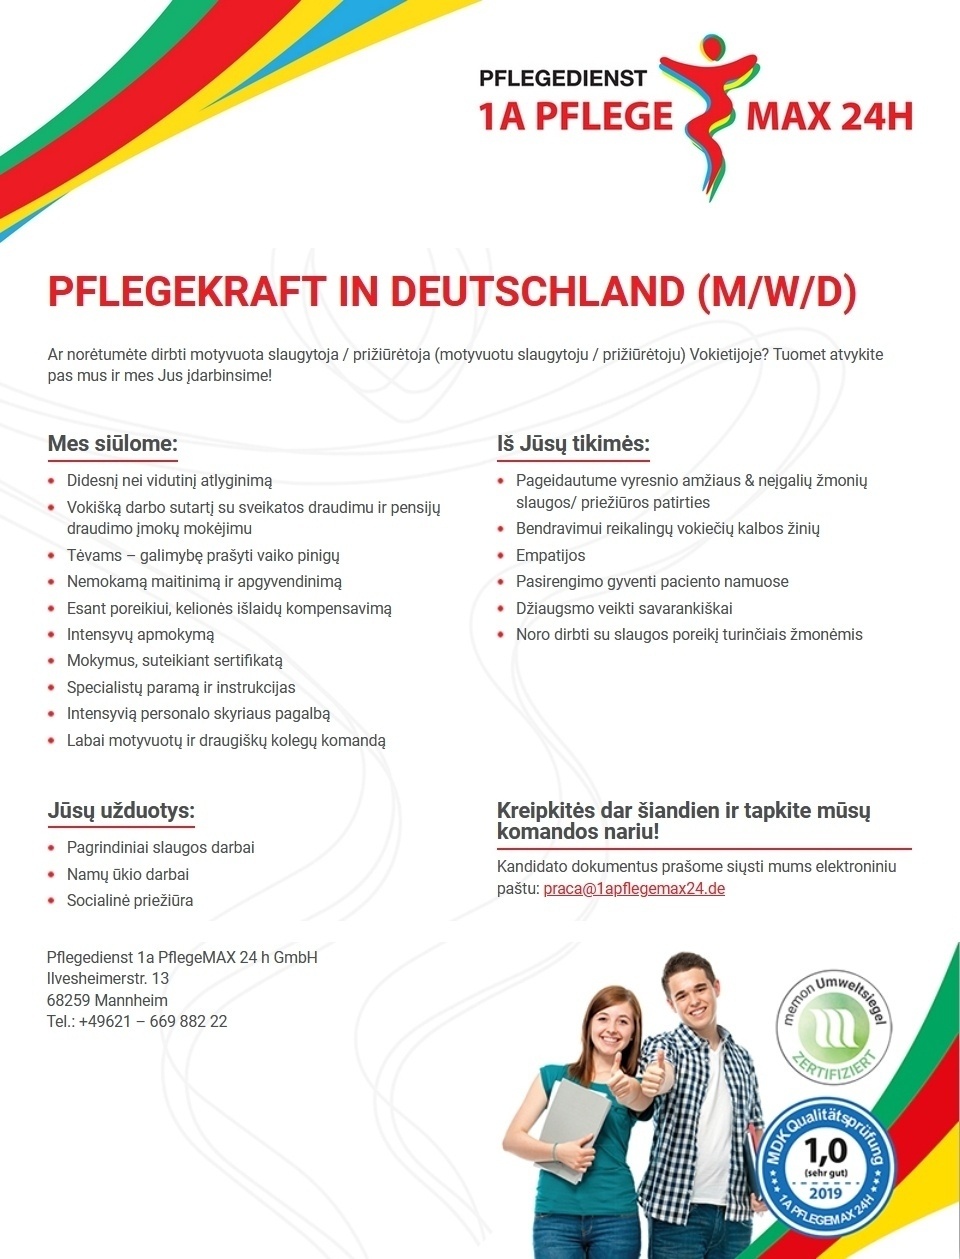 Pflegedienst 1a PflegeMAX 24h GmbH PFLEGEKRAFT IN DEUTSCHLAND (M/W/D)